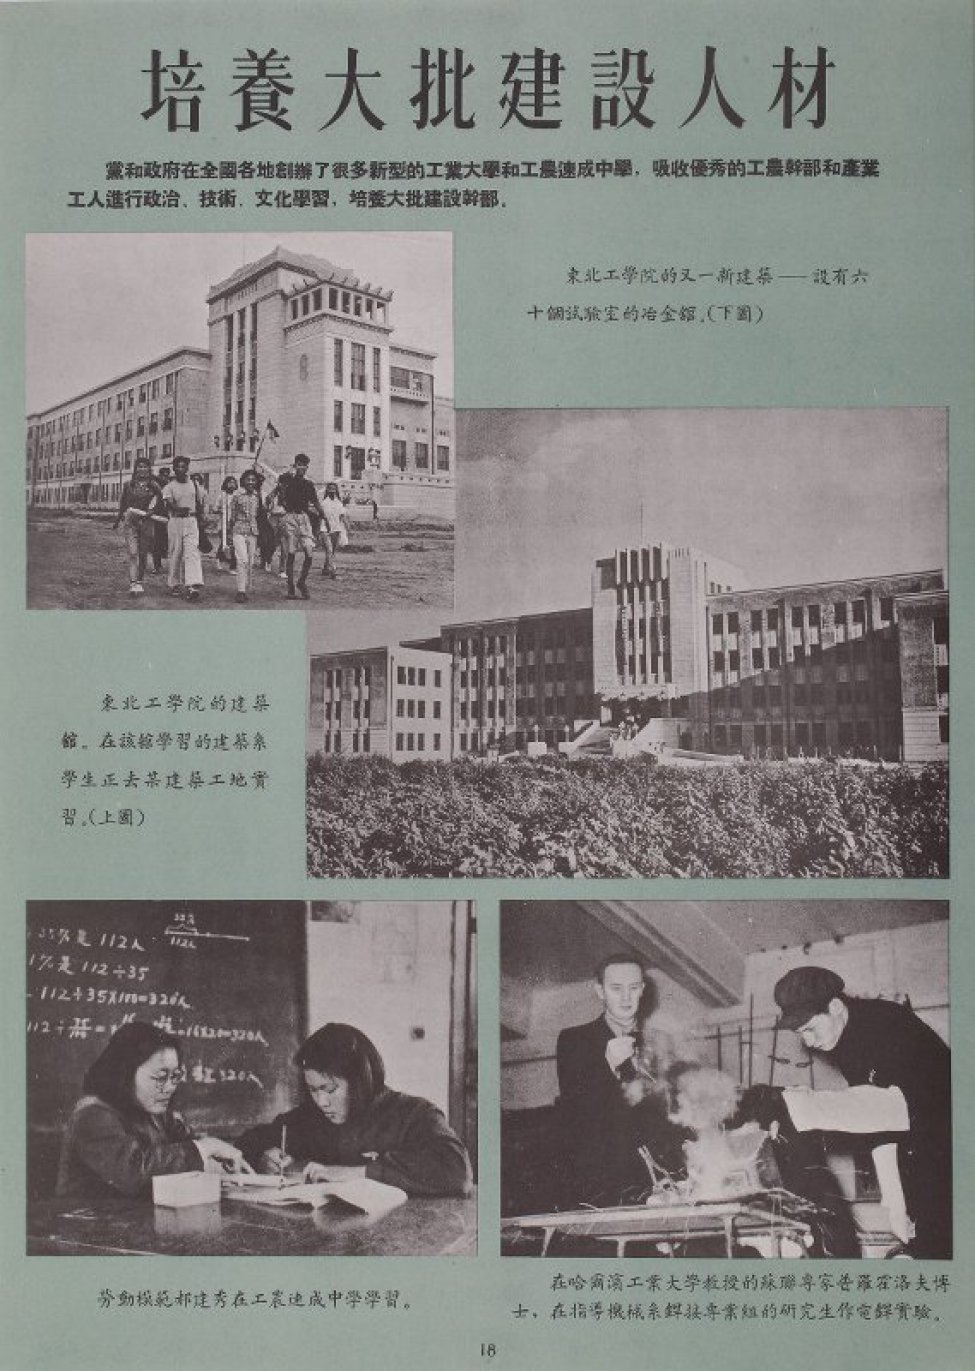 На плакате помещена композиция из 4-х фотоснимков, черно-белых и тексты на китайском языке. В верхней части композиции, слева - на переднем плане группа молодежи с геодезическими инструментами, на втором плане -здание учебного заведения. В средней части справа - отдельно стоящее четырехэтажное здание. В нижней части композиции слева - преподаватель и ученица за столом, за спиной - доска с математическими решениями; справа -двое мужчин проводят опыты в лаборатории. Текст на китайском языке: 1 строка крупным шрифтом, под ней - более мелким. Изображения сопровождаются пояснительным текстом. Фон плаката зеленый.